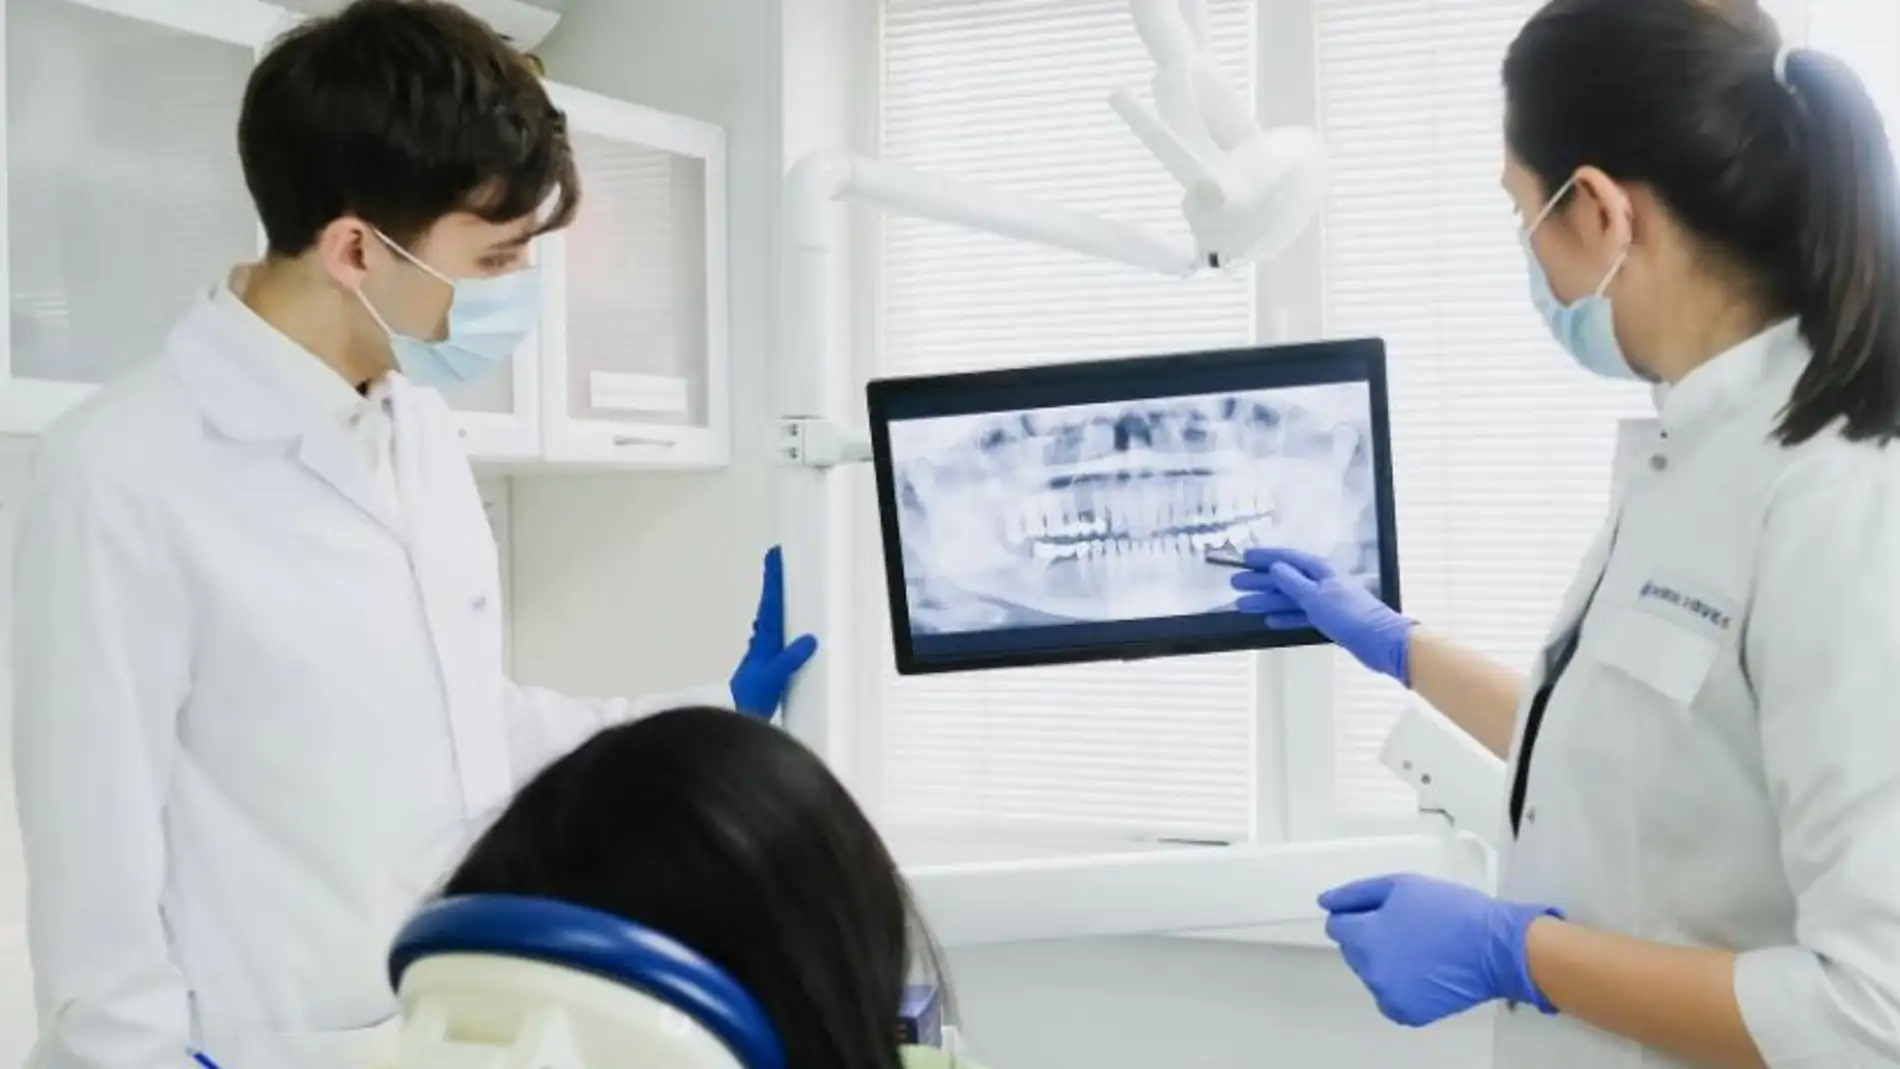 Los dentistas advierten sobre los peligros de la nueva moda de consumir óxido nitroso